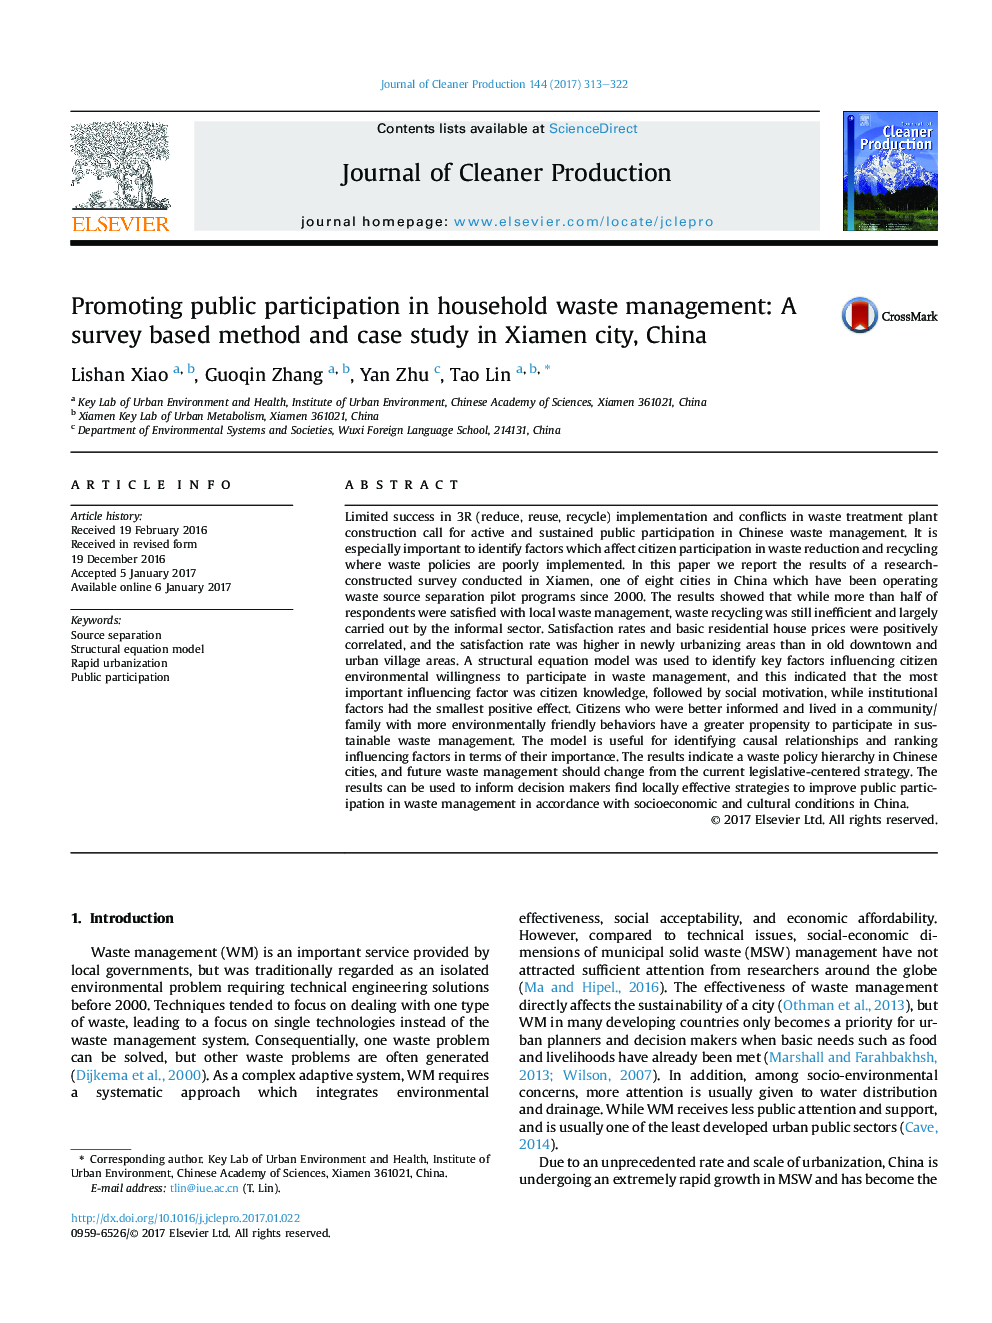 ترویج مشارکت عمومی در مدیریت ضایعات خانگی: روش تحقیق و مطالعه موردی در شهر چیانگ، چین 